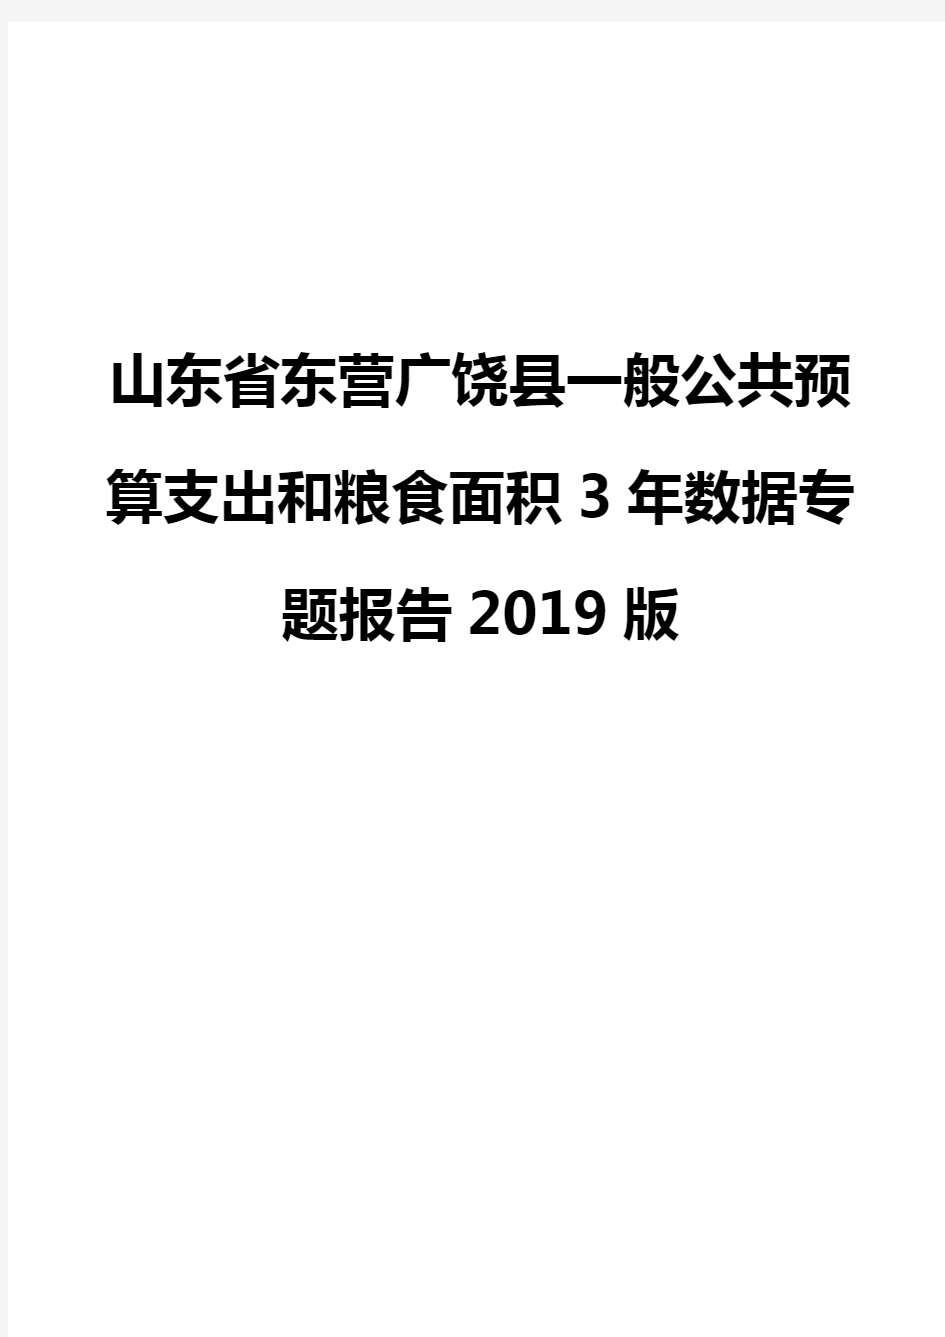 山东省东营广饶县一般公共预算支出和粮食面积3年数据专题报告2019版